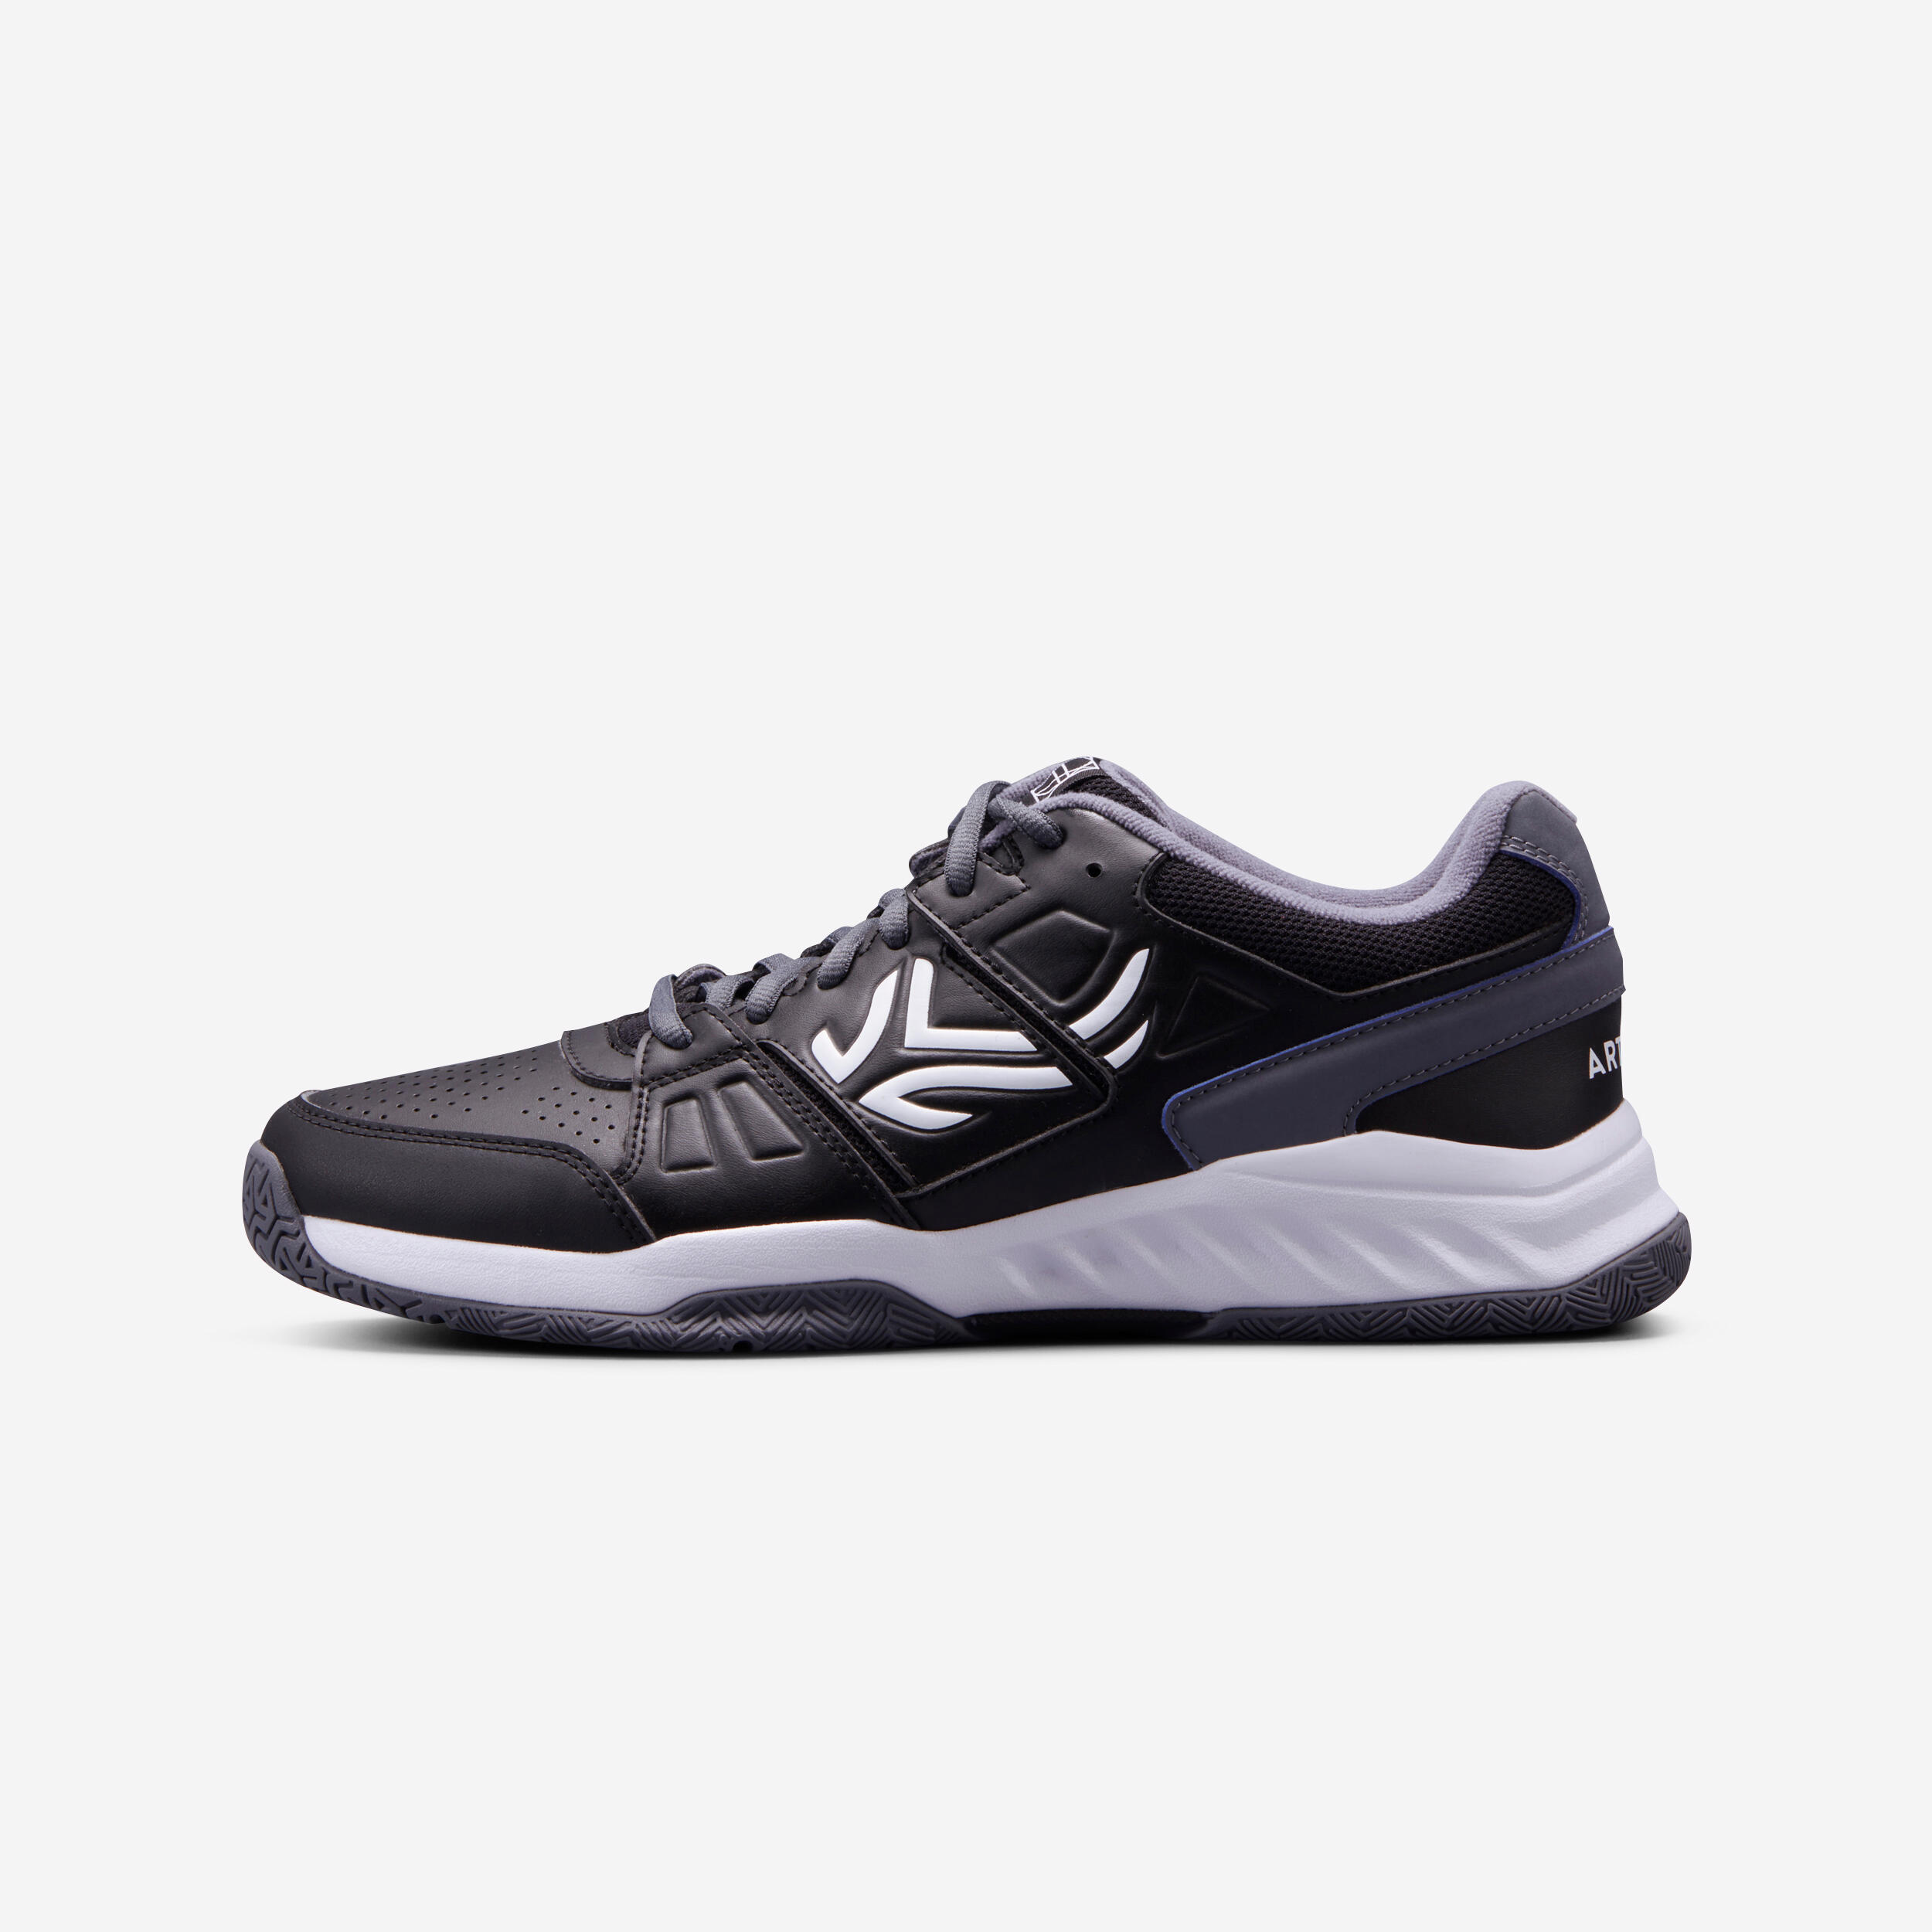 TS160 Multi-Court Tennis Shoes - Black - ARTENGO